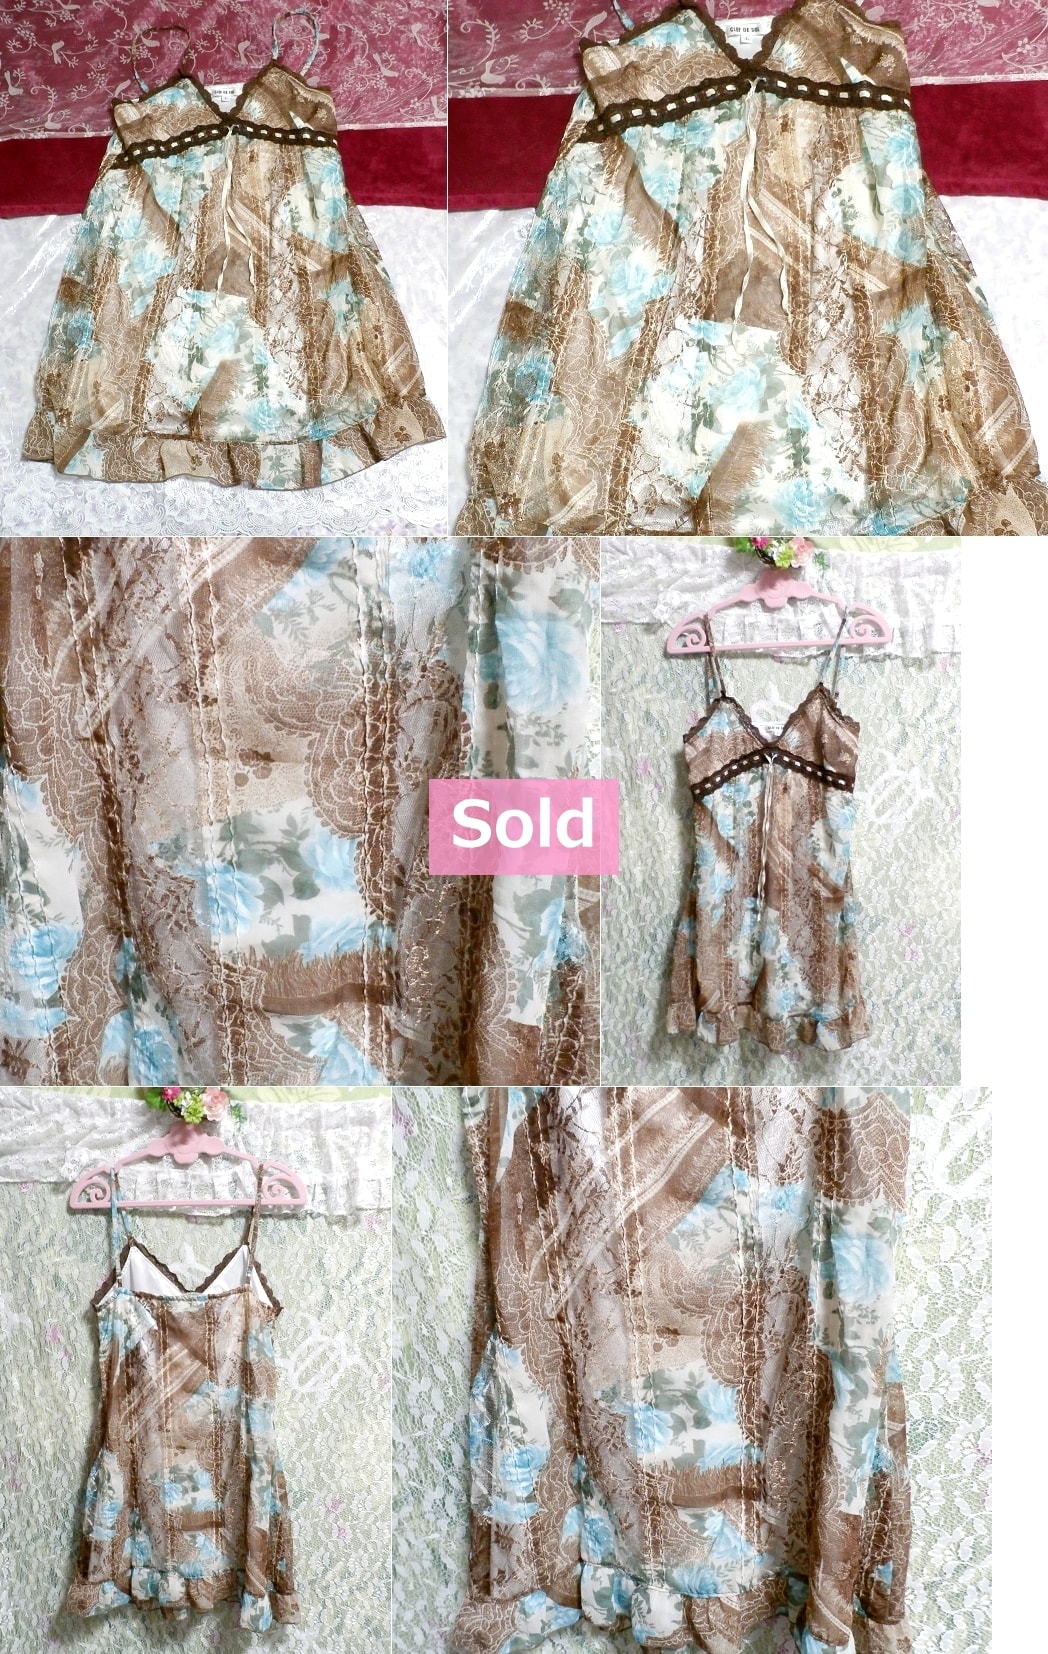 라이트 블루 브라운 꽃무늬 프릴 네글리제 나이트가운 시폰 캐미솔 드레스, 패션, 숙녀 패션, 캐미솔